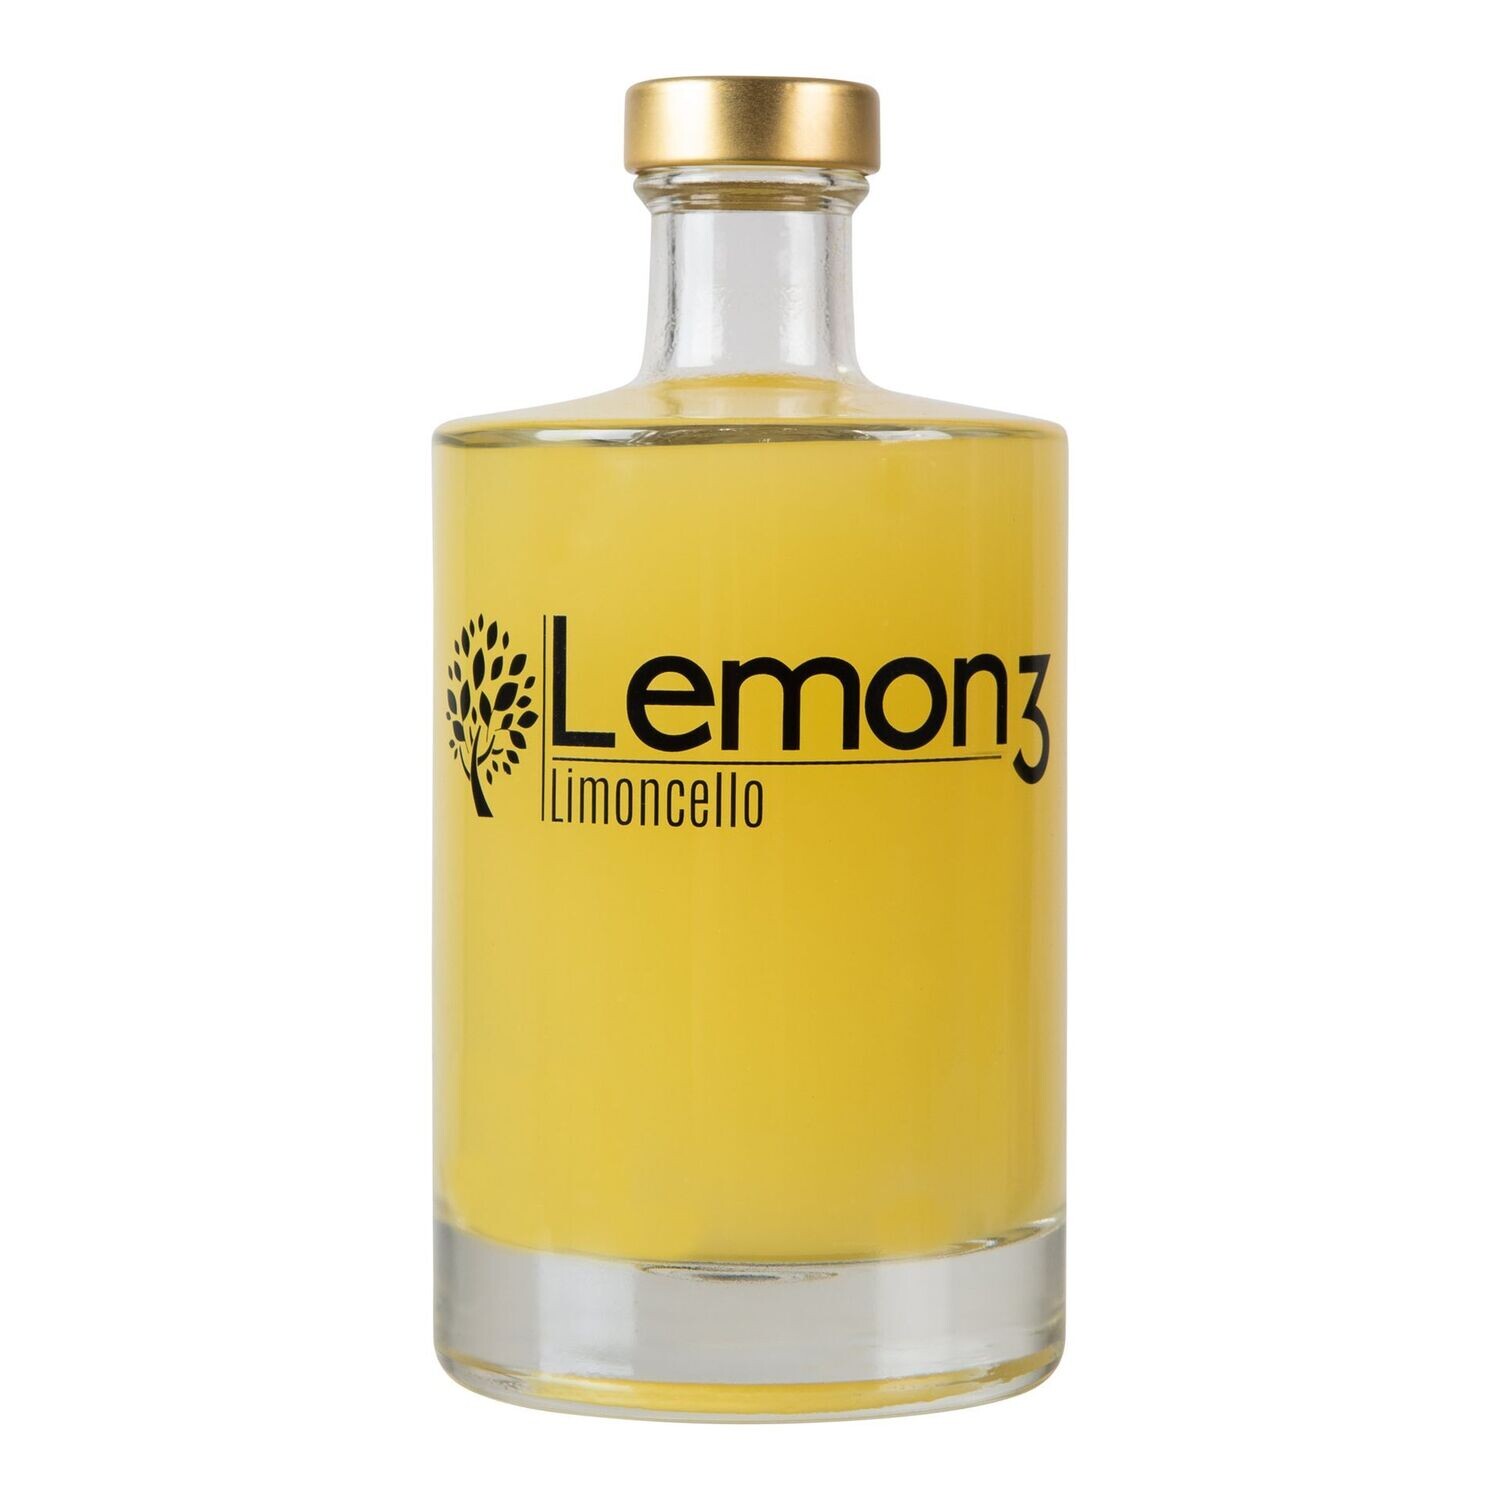 Lemon3 Limoncello